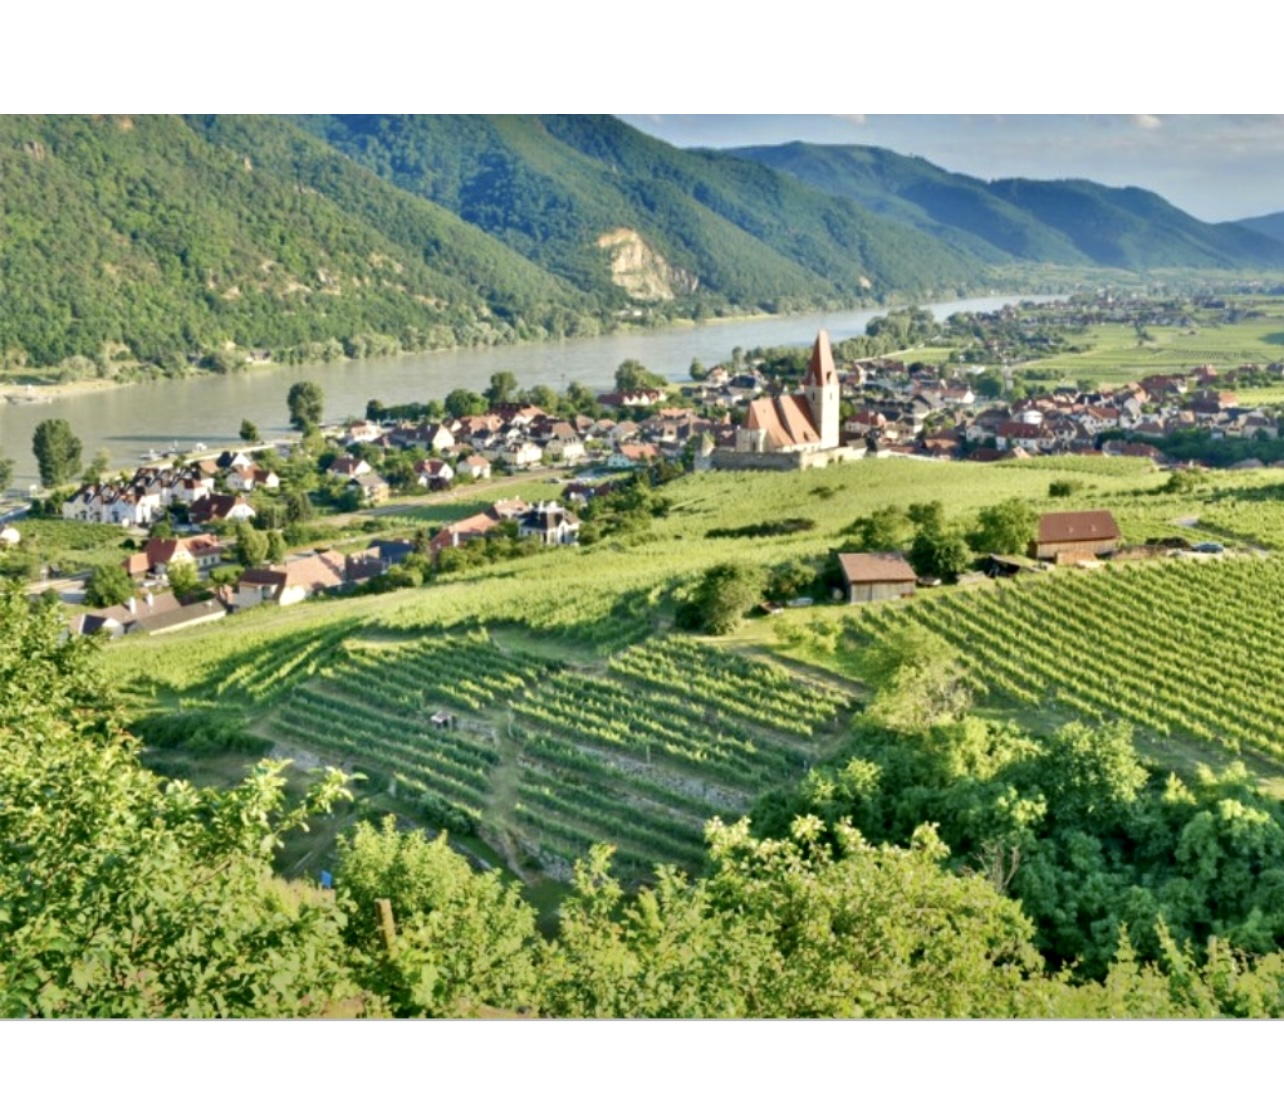 Une vue sur un village et des vignobles près du Rhin, célèbre pour ses Vins d’Autriche.